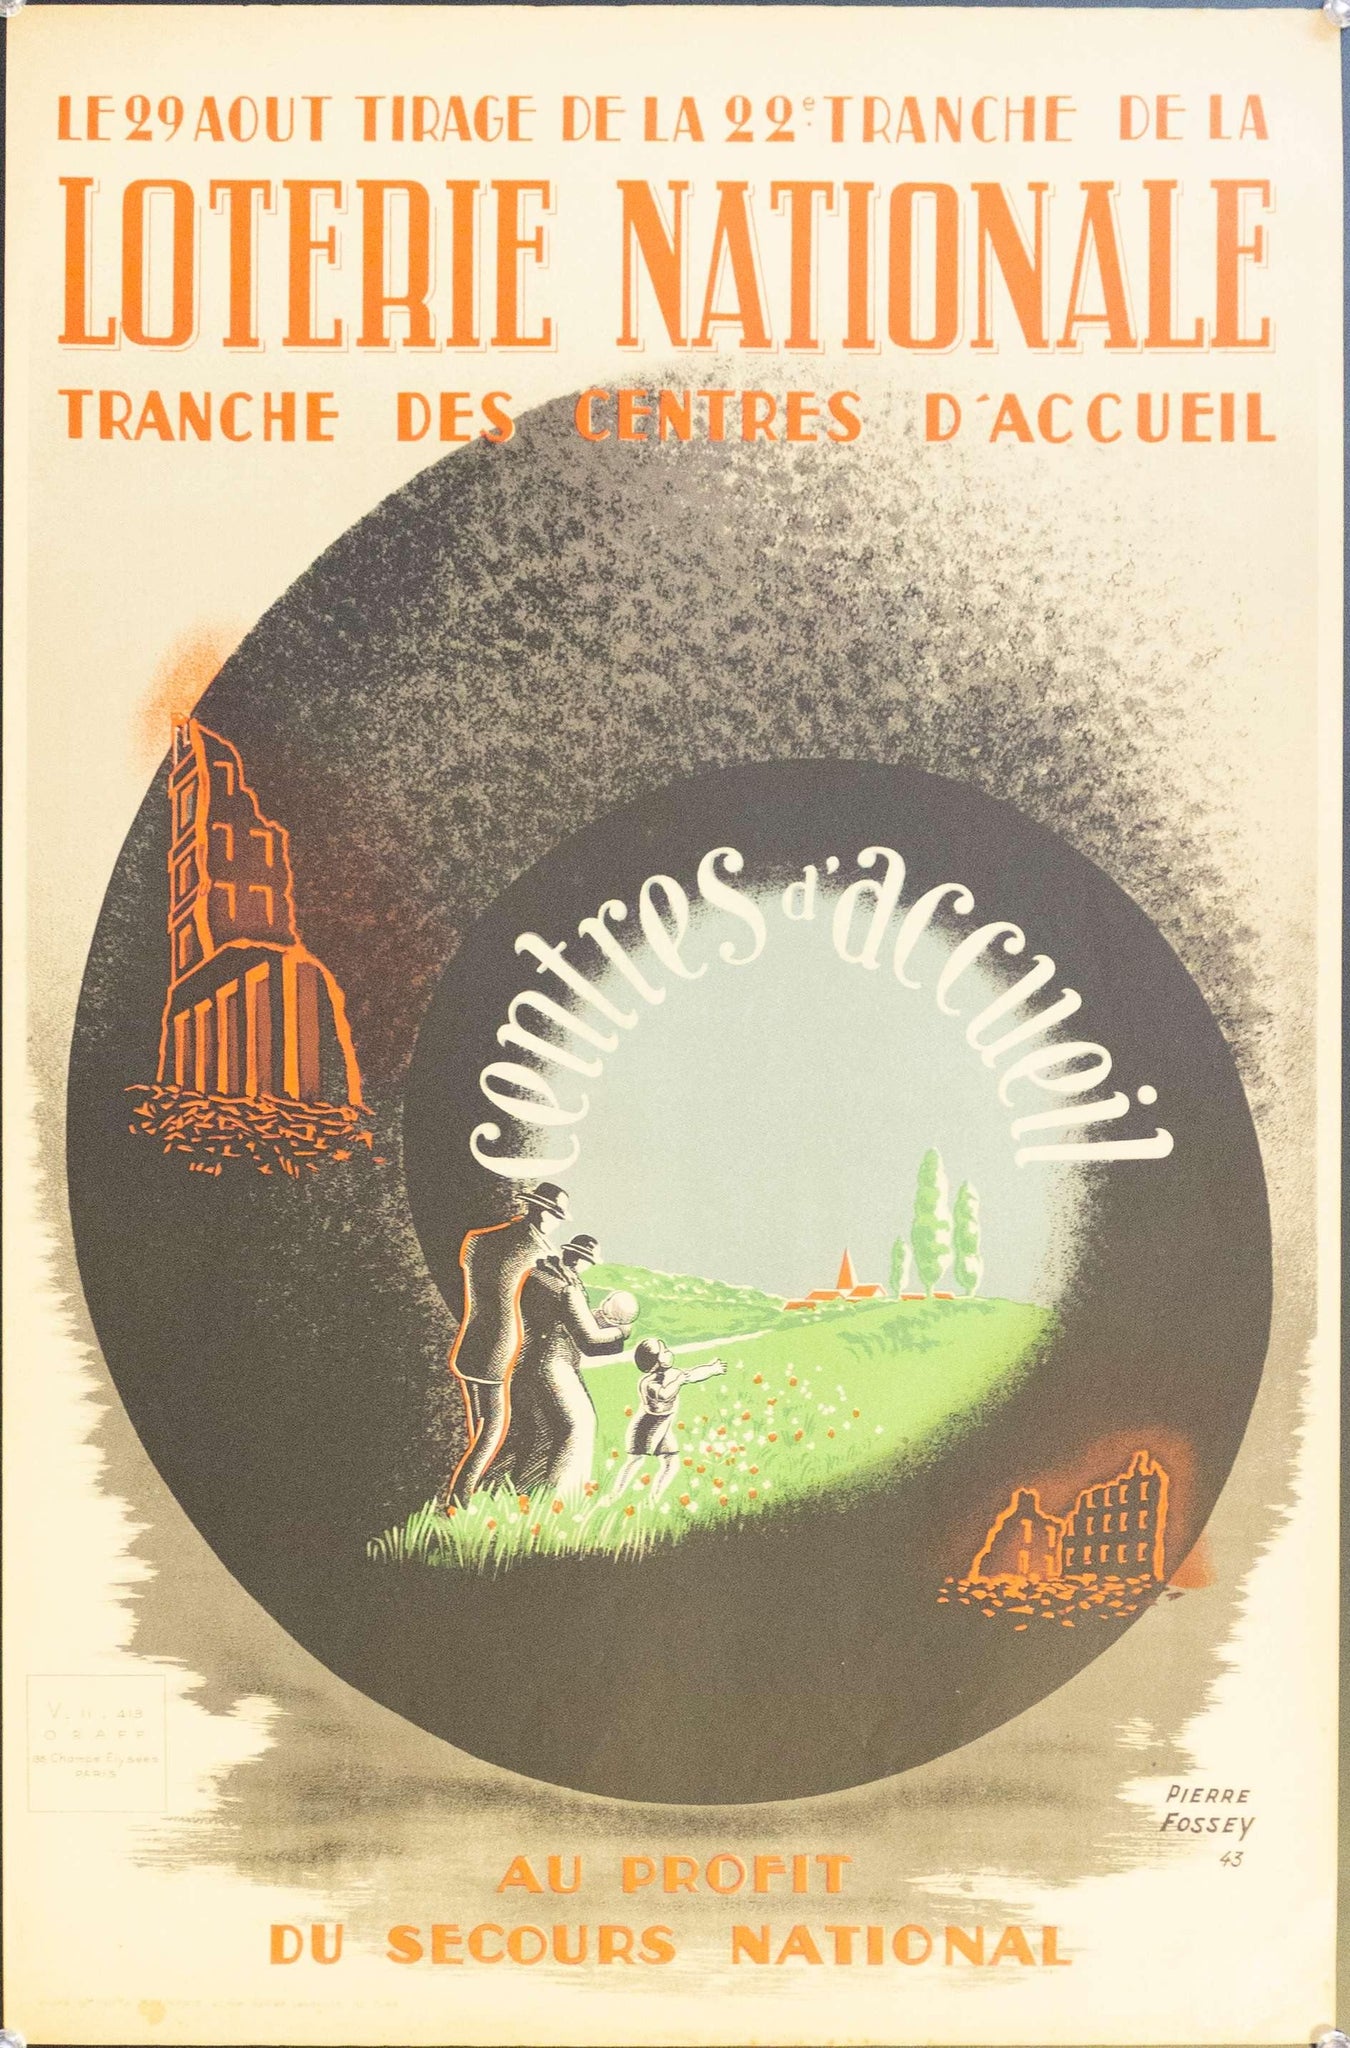 1943 Loterie National Tranche Des Centres D'accueil Au Profit Du Secours National - Golden Age Posters